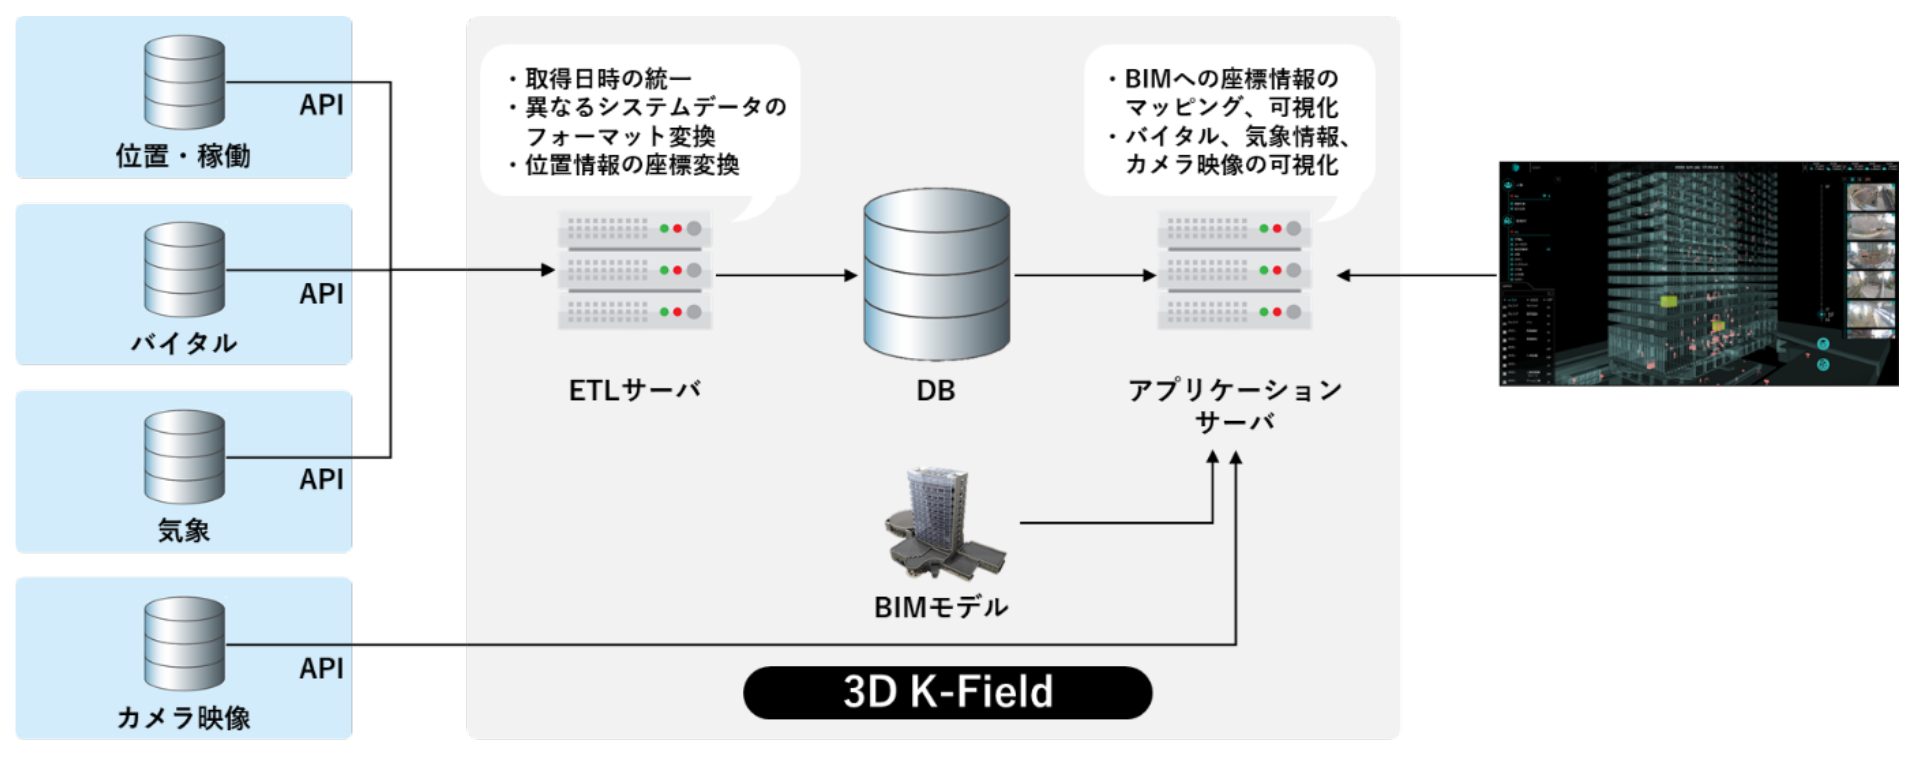 「3D K-Field」システム構成図